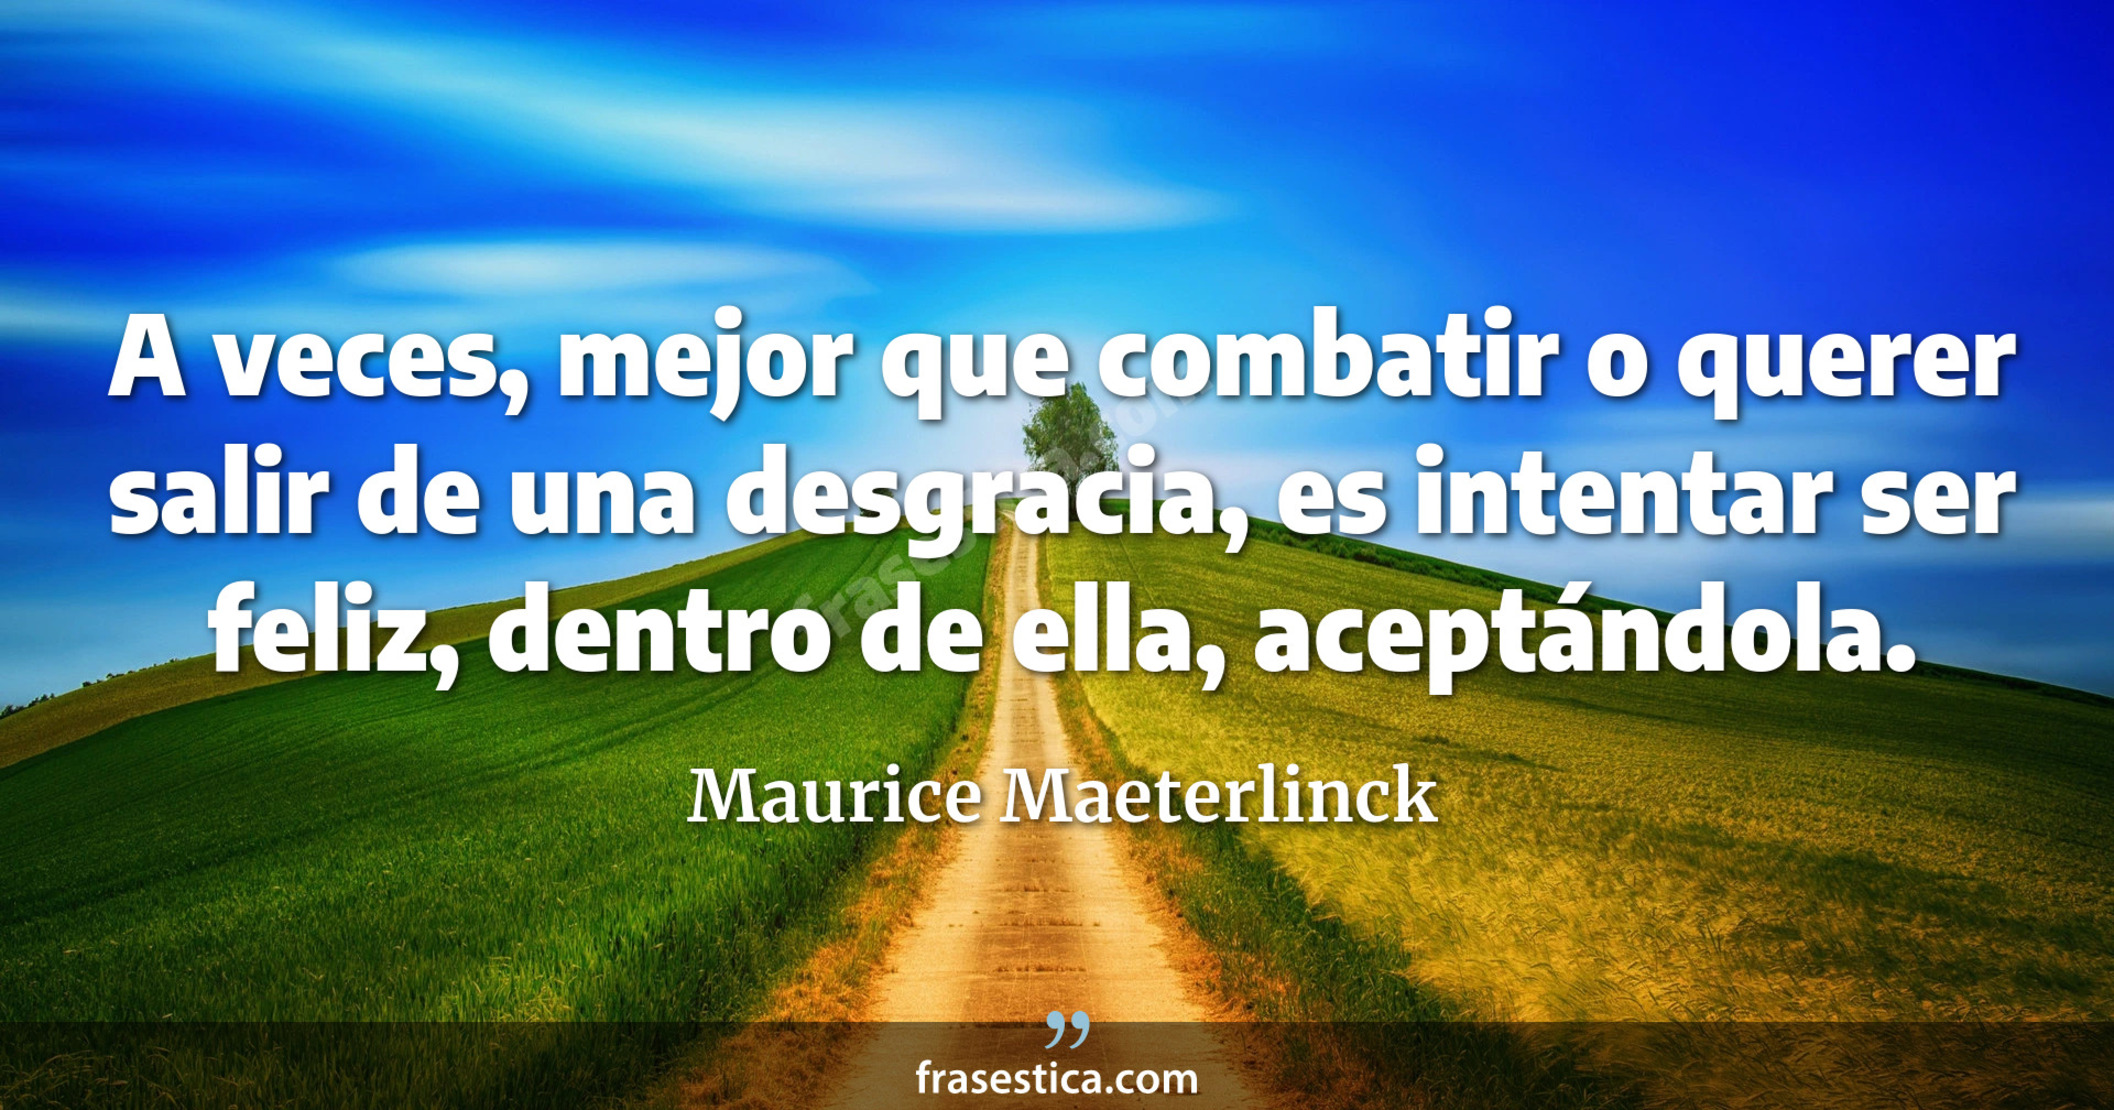 A veces, mejor que combatir o querer salir de una desgracia, es intentar ser feliz, dentro de ella, aceptándola. - Maurice Maeterlinck